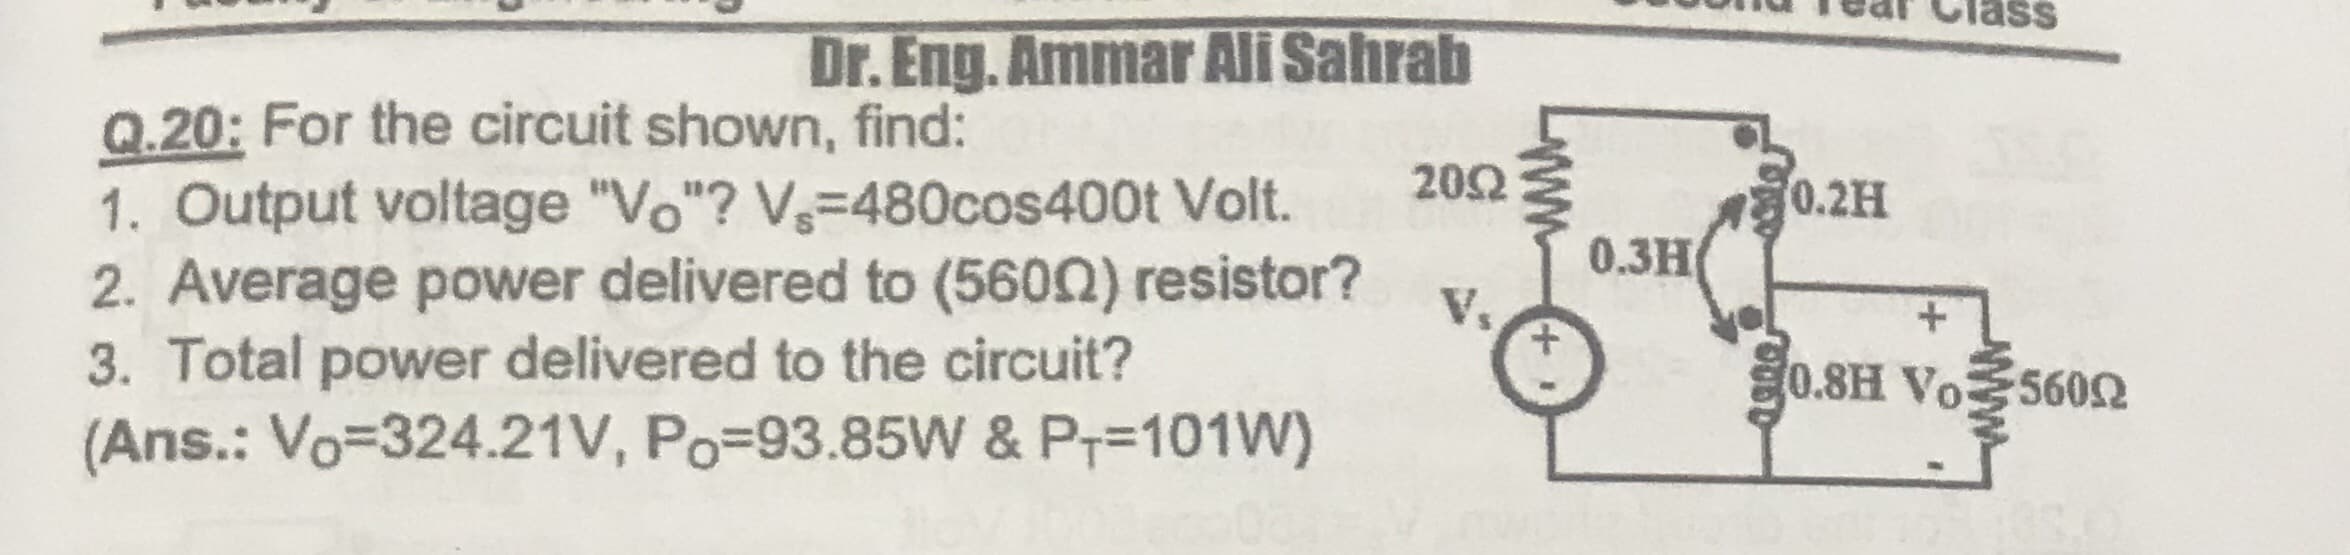 Dr. Eng. Ammar Ali Sahrab
Q.20: For the circuit shown, find:
1. Output voltage "Vo"? V-480cos400t Volt.
2. Average power delivered to (5600) resistor?
3. Total power delivered to the circuit?
(Ans.: Vo=324.21V, Po=93.85W & P;=101W)
202
0.2H
0.3H
V.
0.8H Vo560
